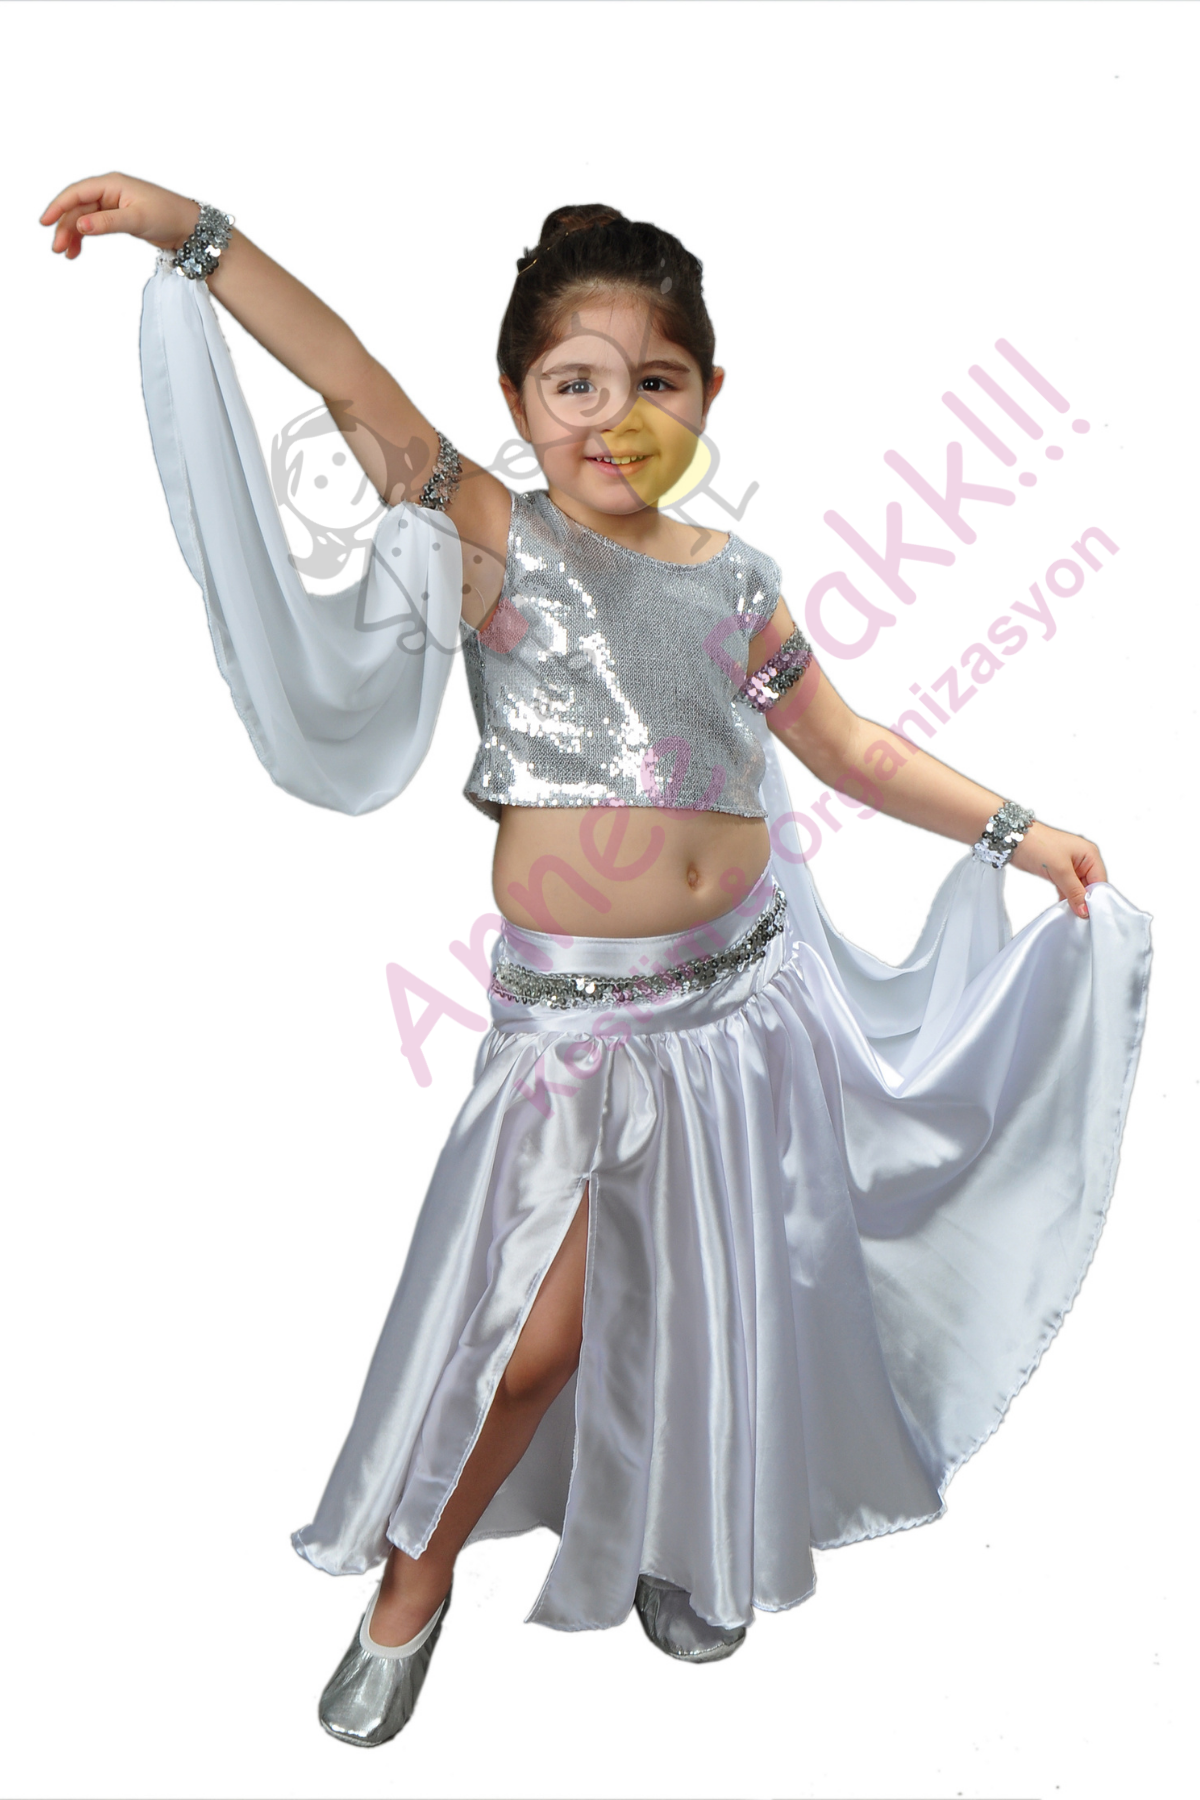 Gümüş Renk Modern Dans Kostümü Kız Çocuk, Modern Dans Kıyafeti, Hızlı Kargo